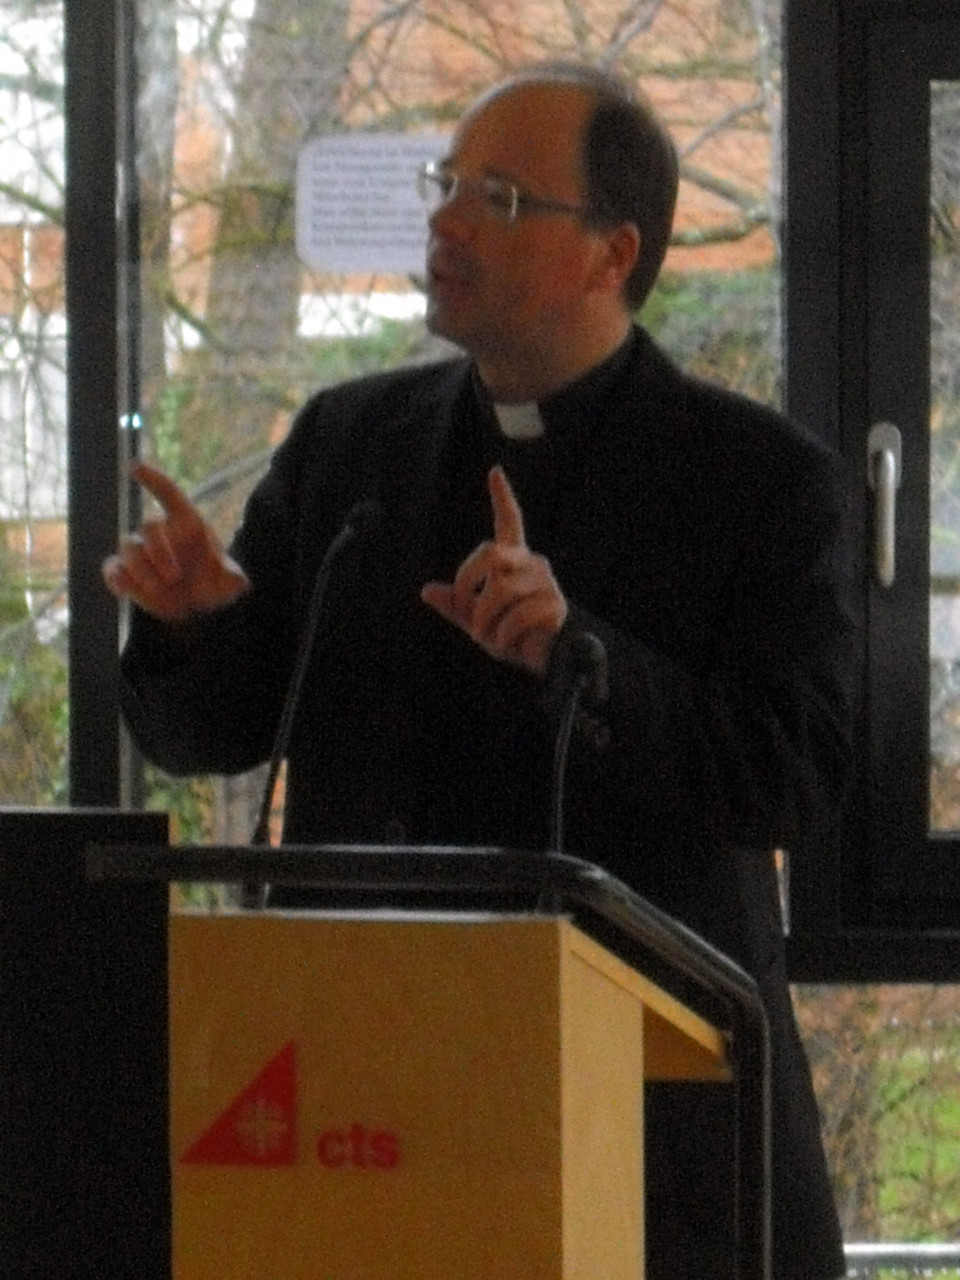 Bischof Ackermann bei seinem Vortrag